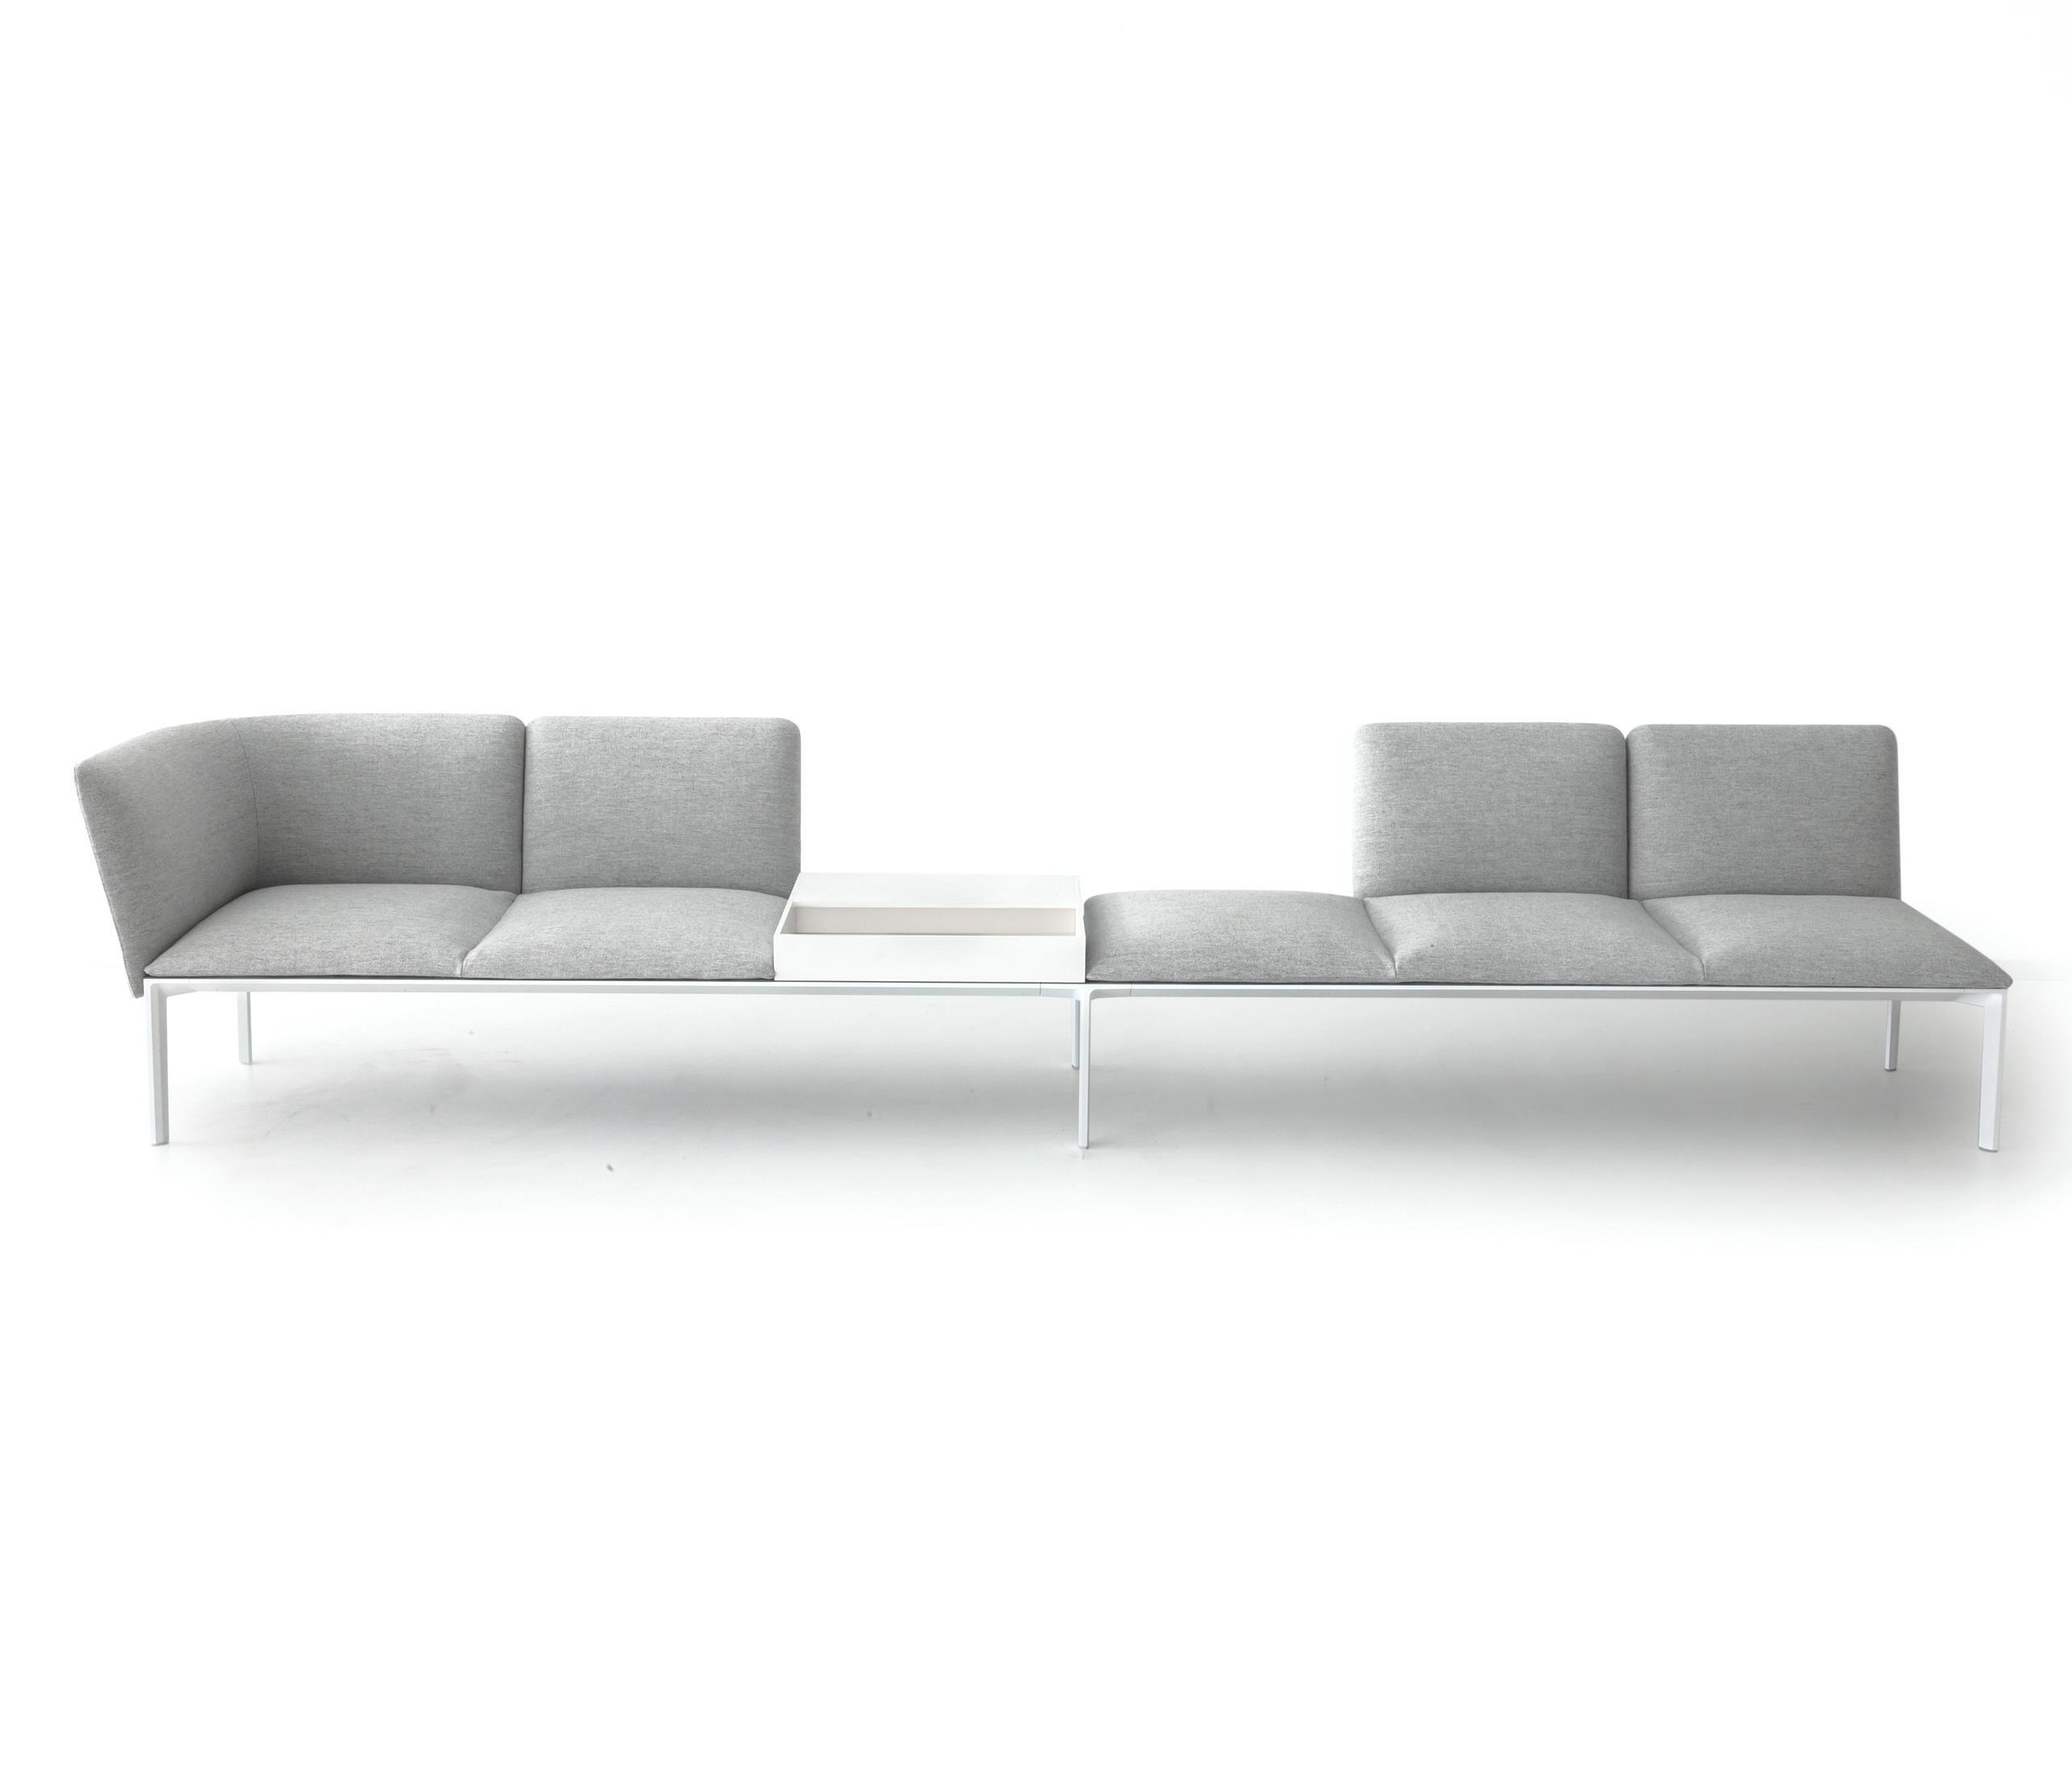 Add collection. Lapalma диван. Современный стол к дивану. Модульные диваны для гостиной с тонкой спинкой. Диван Otium lapalma.